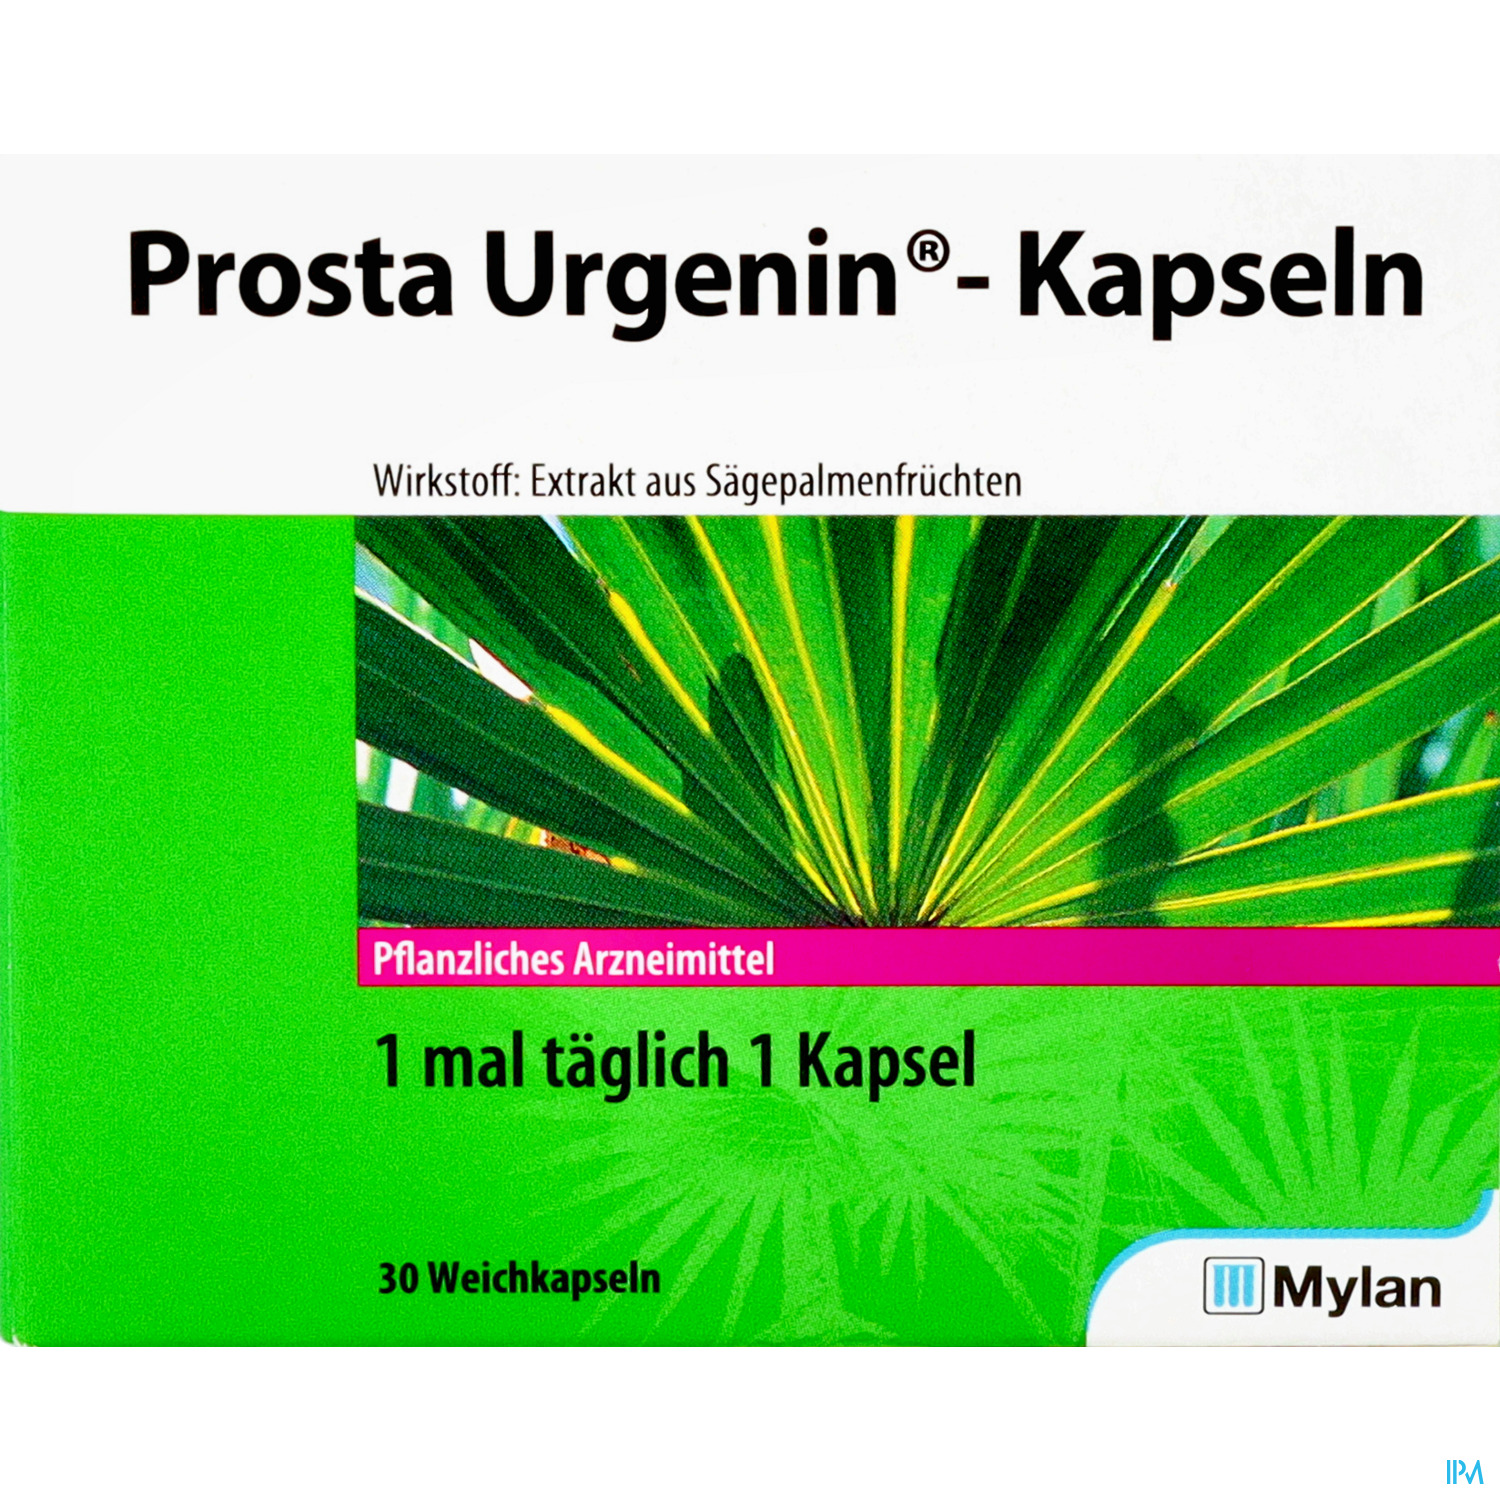 Prosta Urgenin - Kapseln